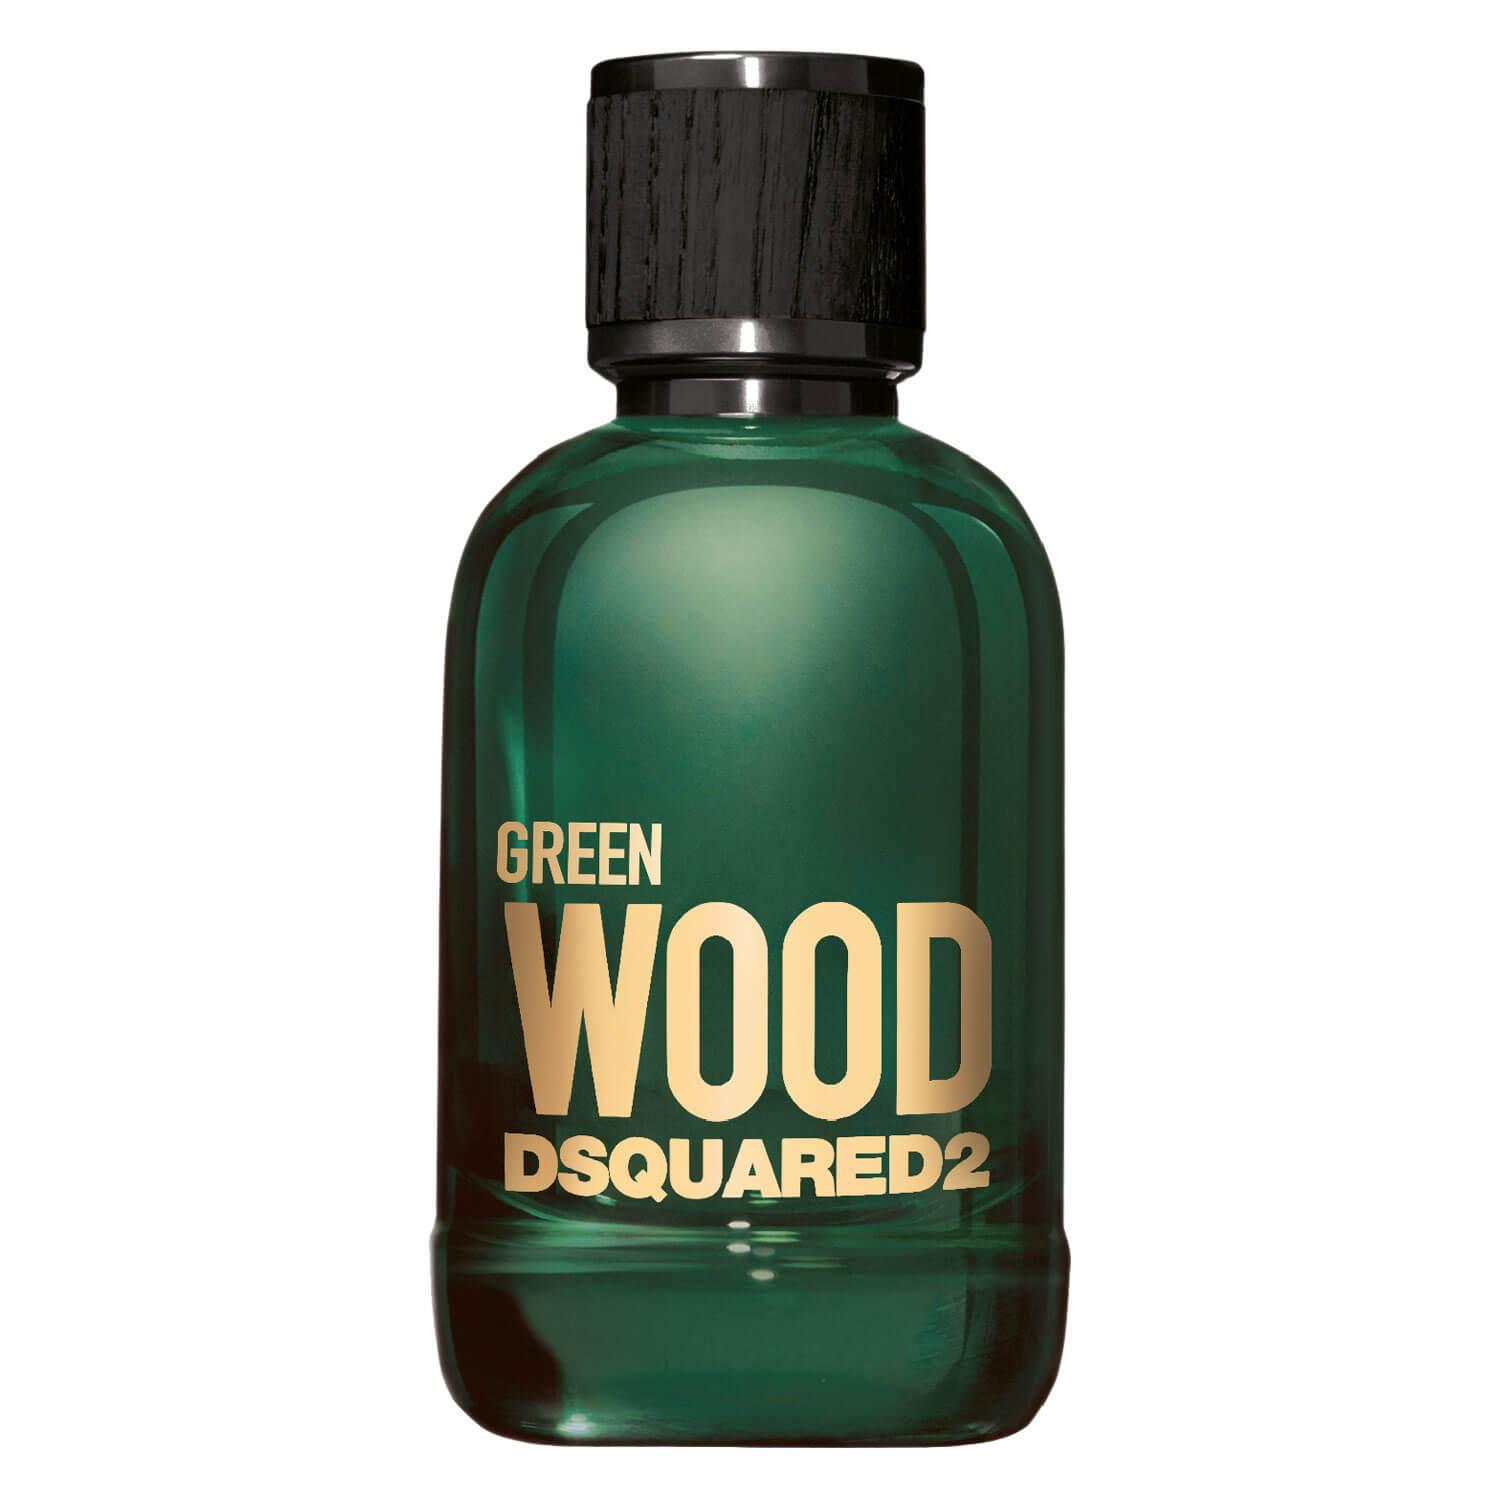 DSQUARED2 WOOD - Green Pour Homme Eau de Toilette